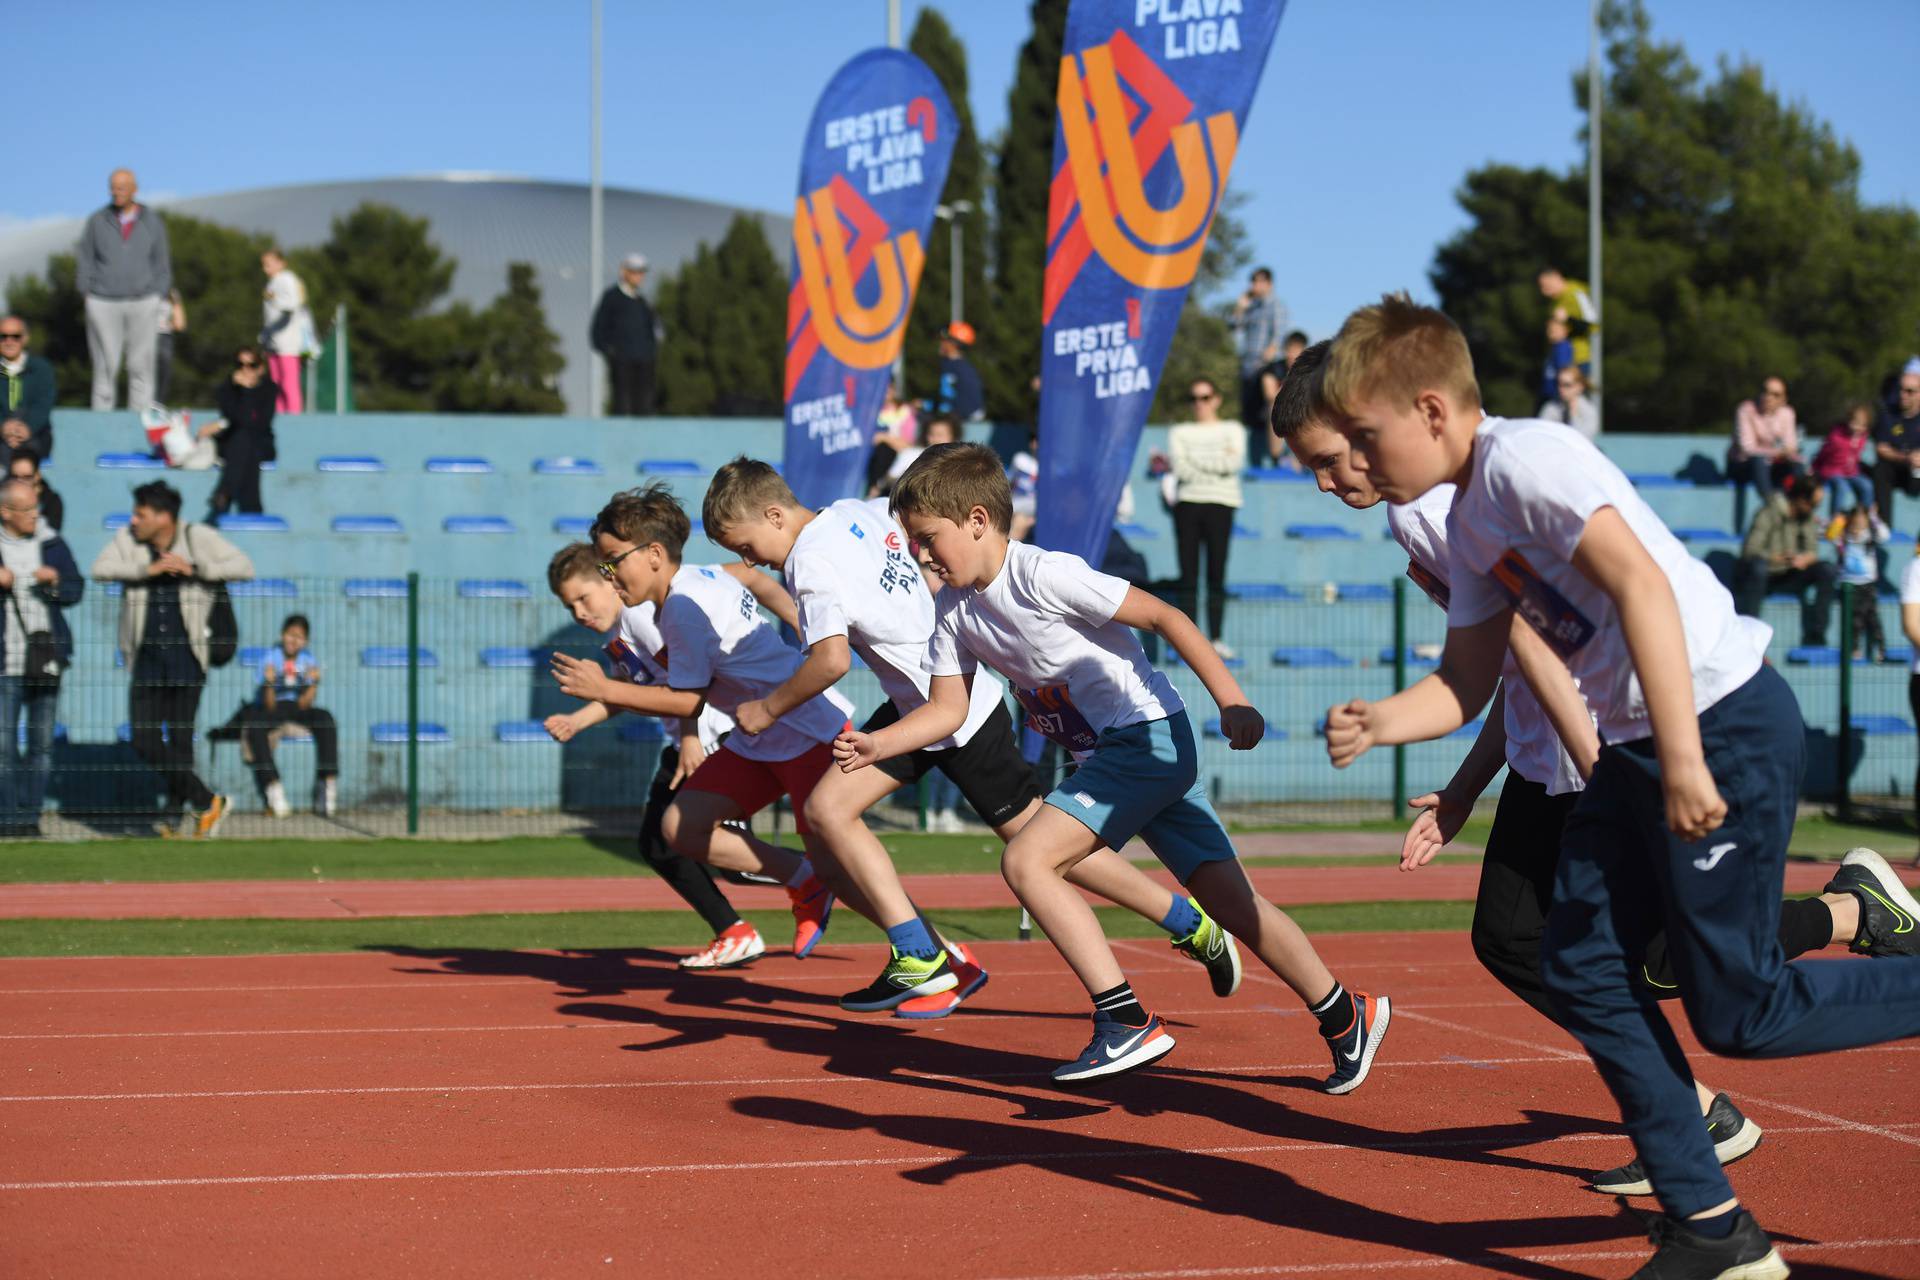 Erste Plava Liga prepoznata je kao značajan projekt za razvoj i promociju atletike u Hrvatskoj